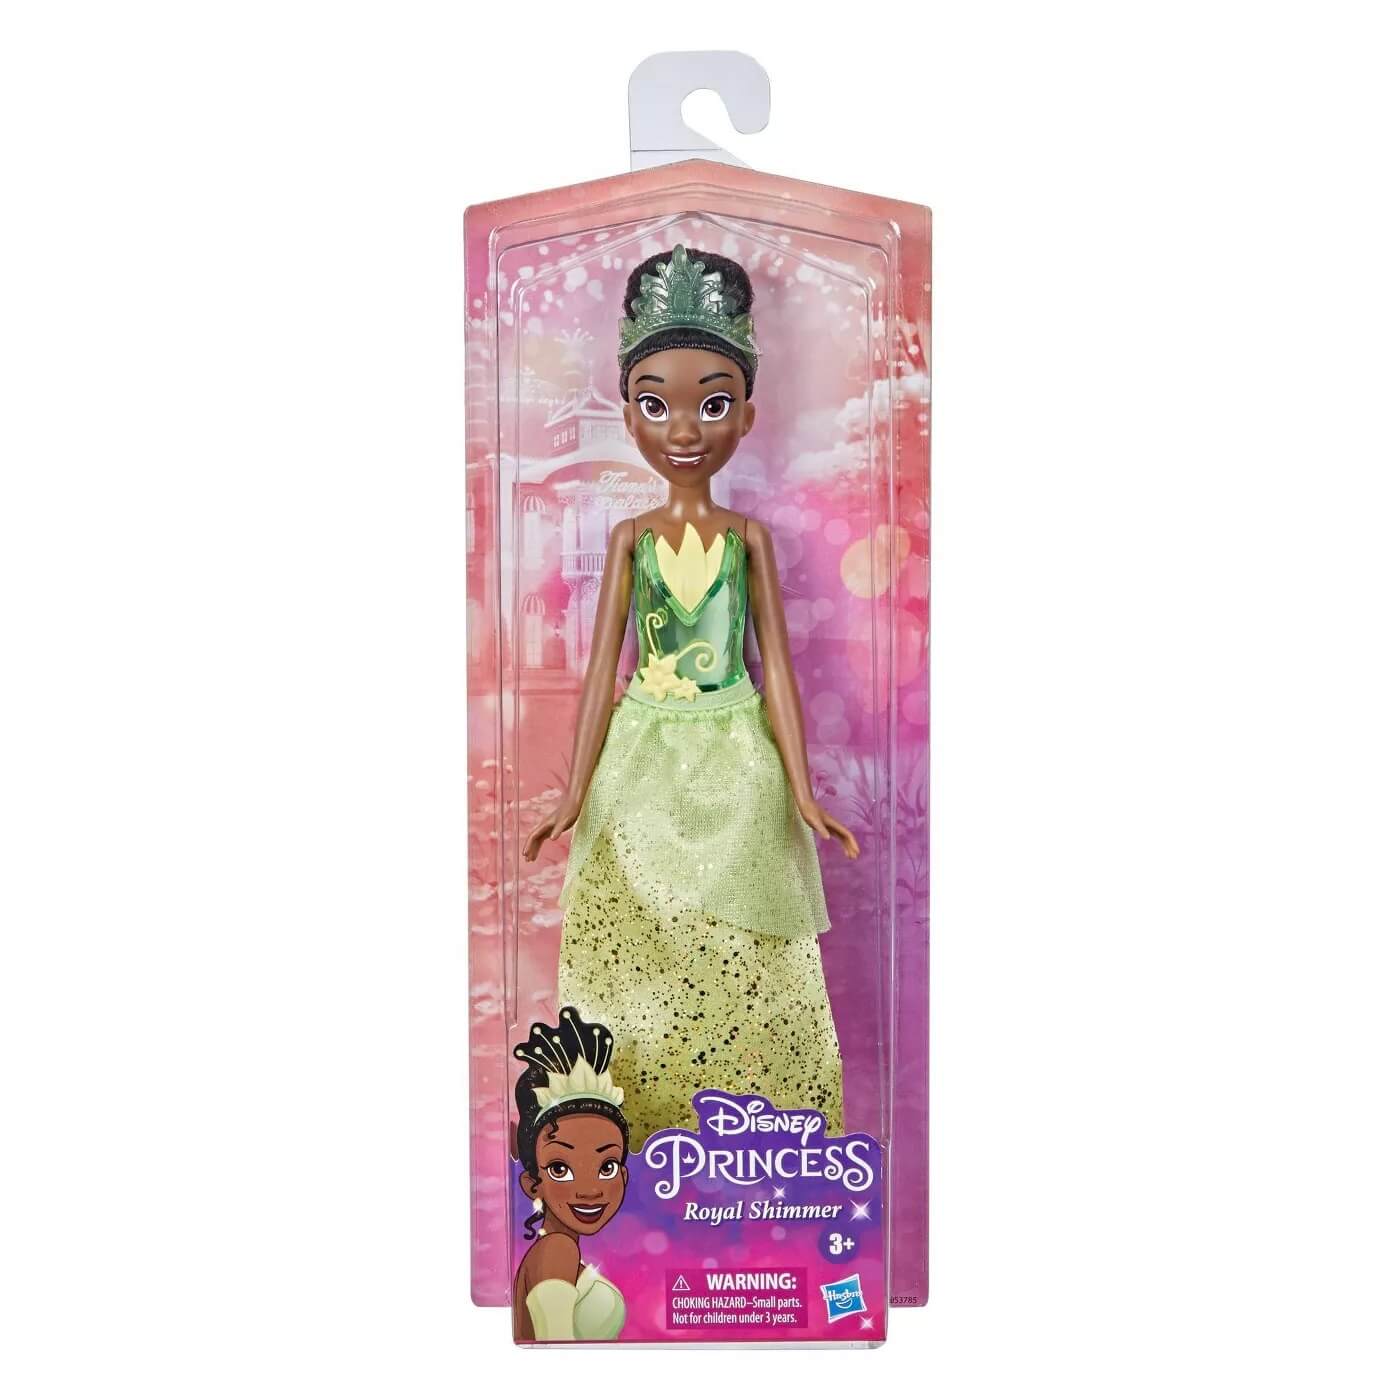 Disney Princess Royal Shimmer Tiana 12" Fashion Doll